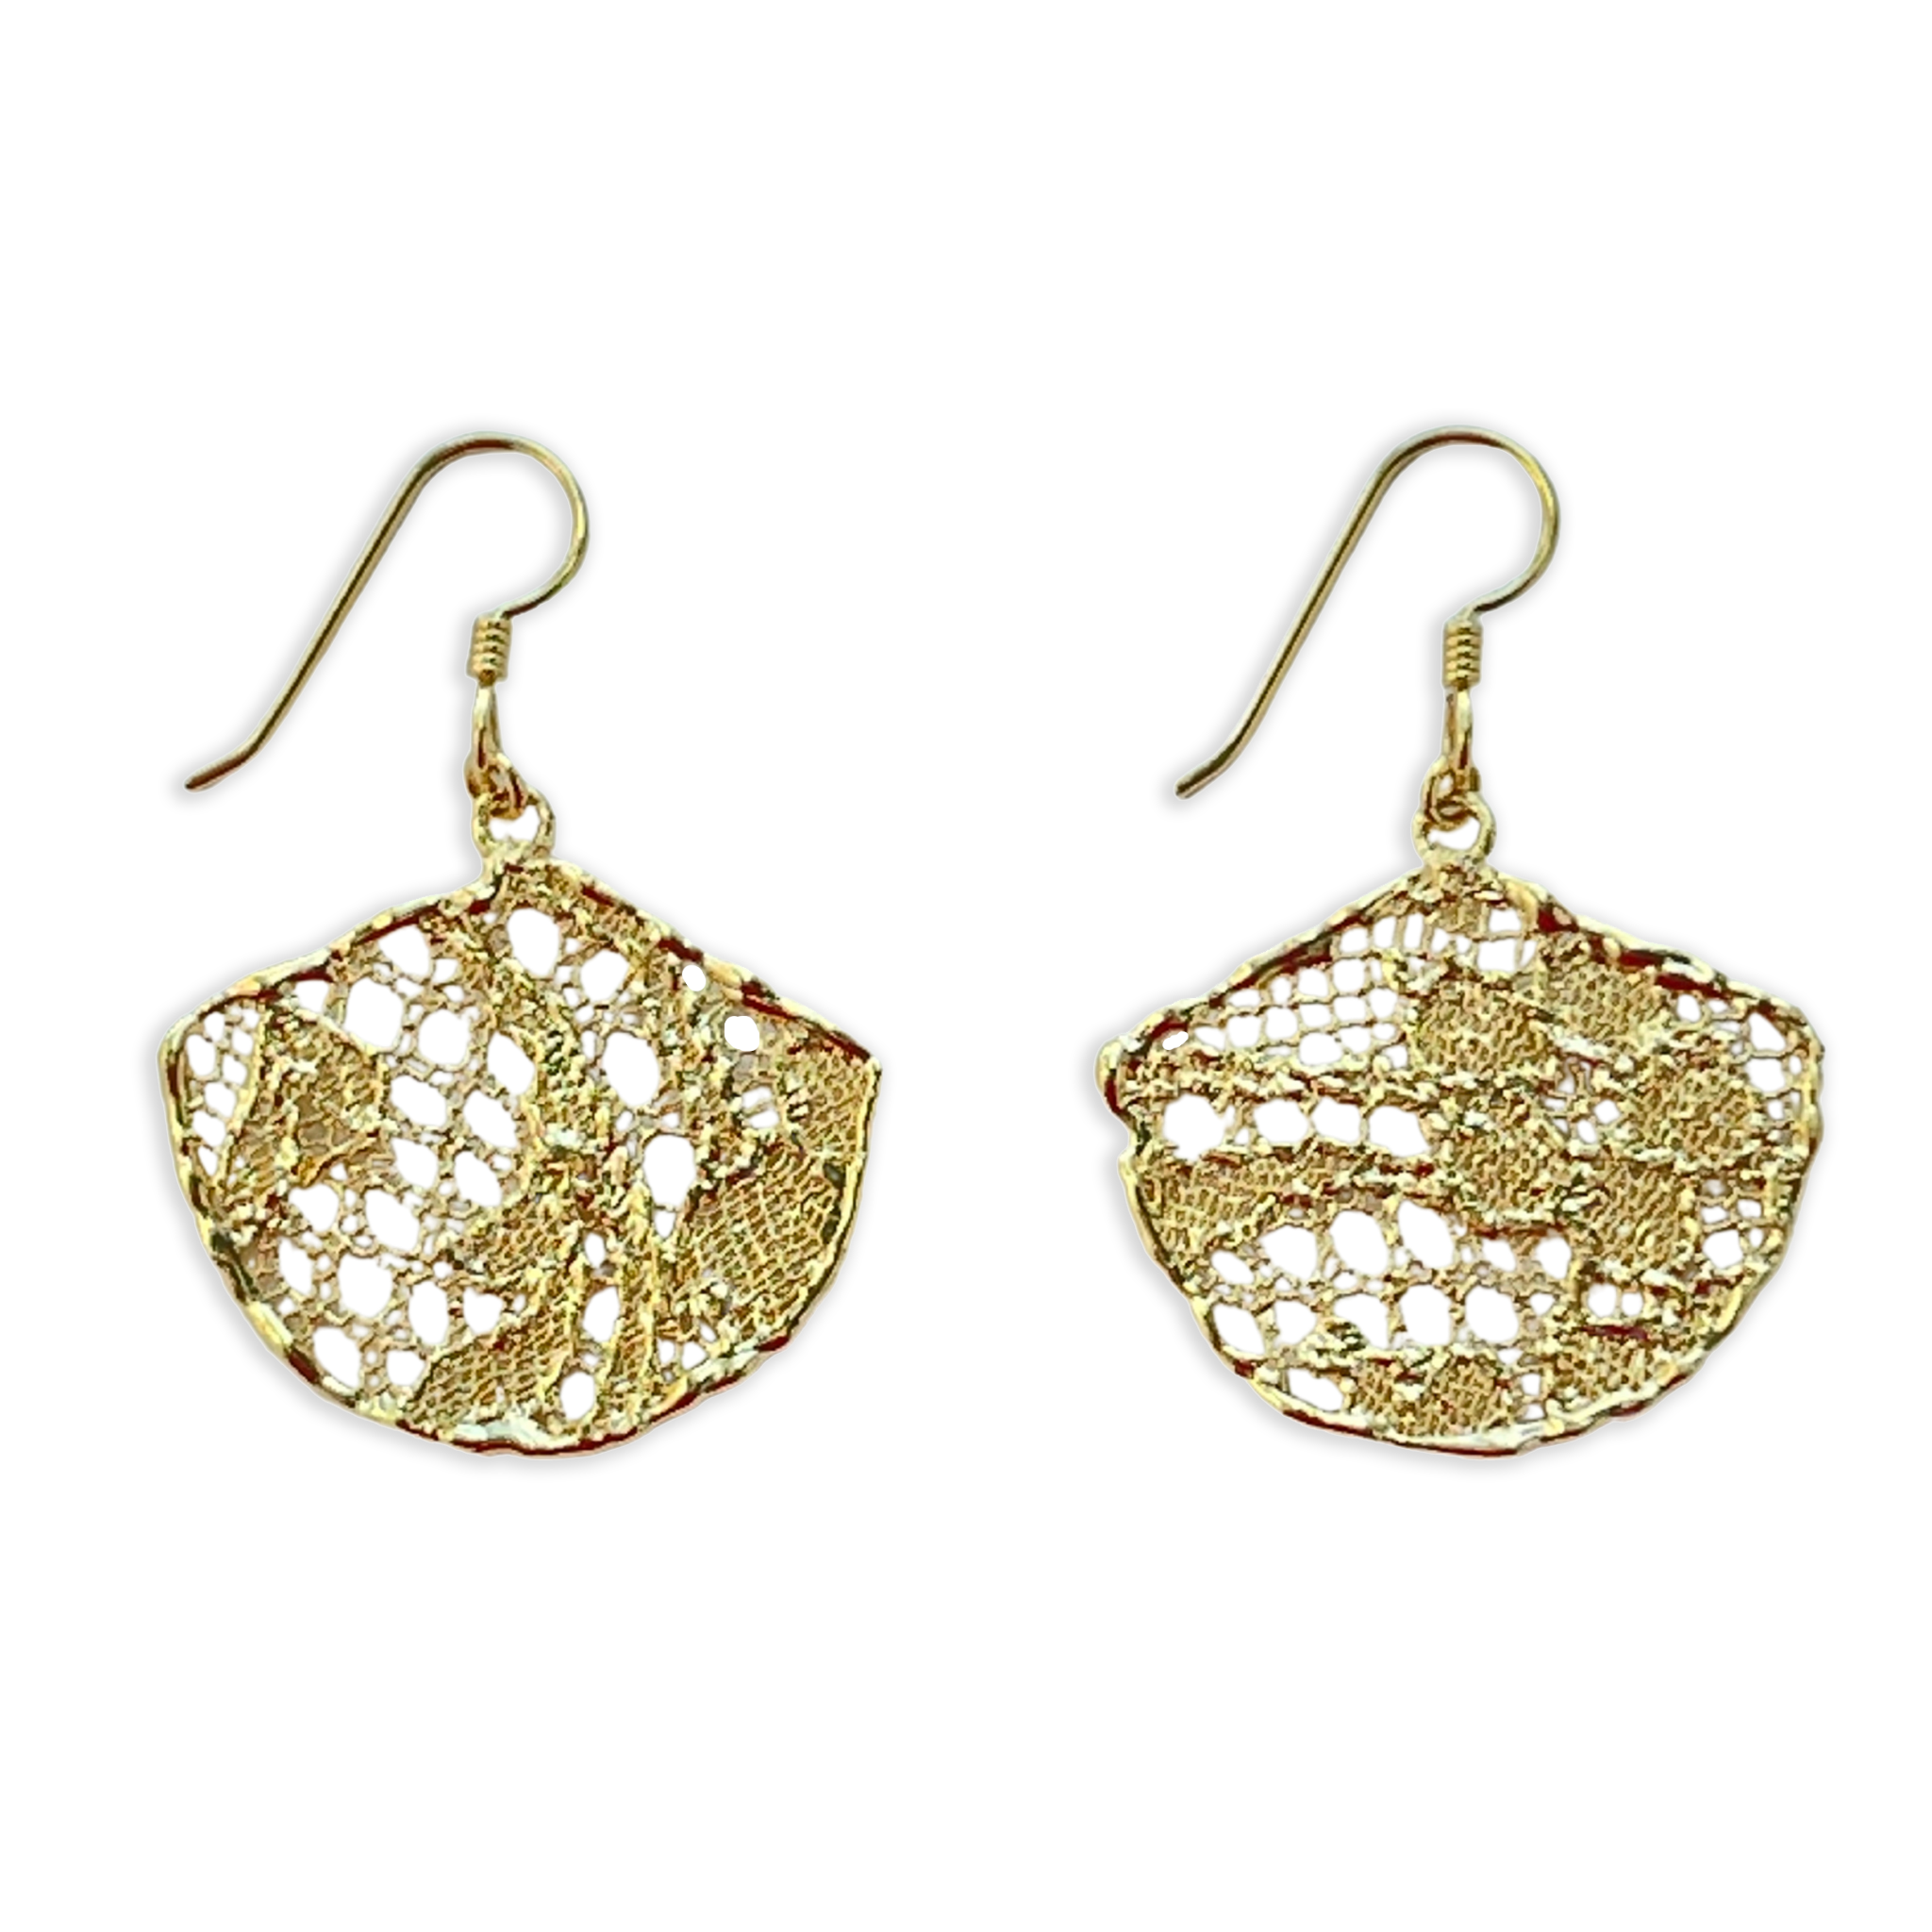 Fan Shaped Lace Earrings - Gilberte - in 24K Gold or Silver Gold 24K